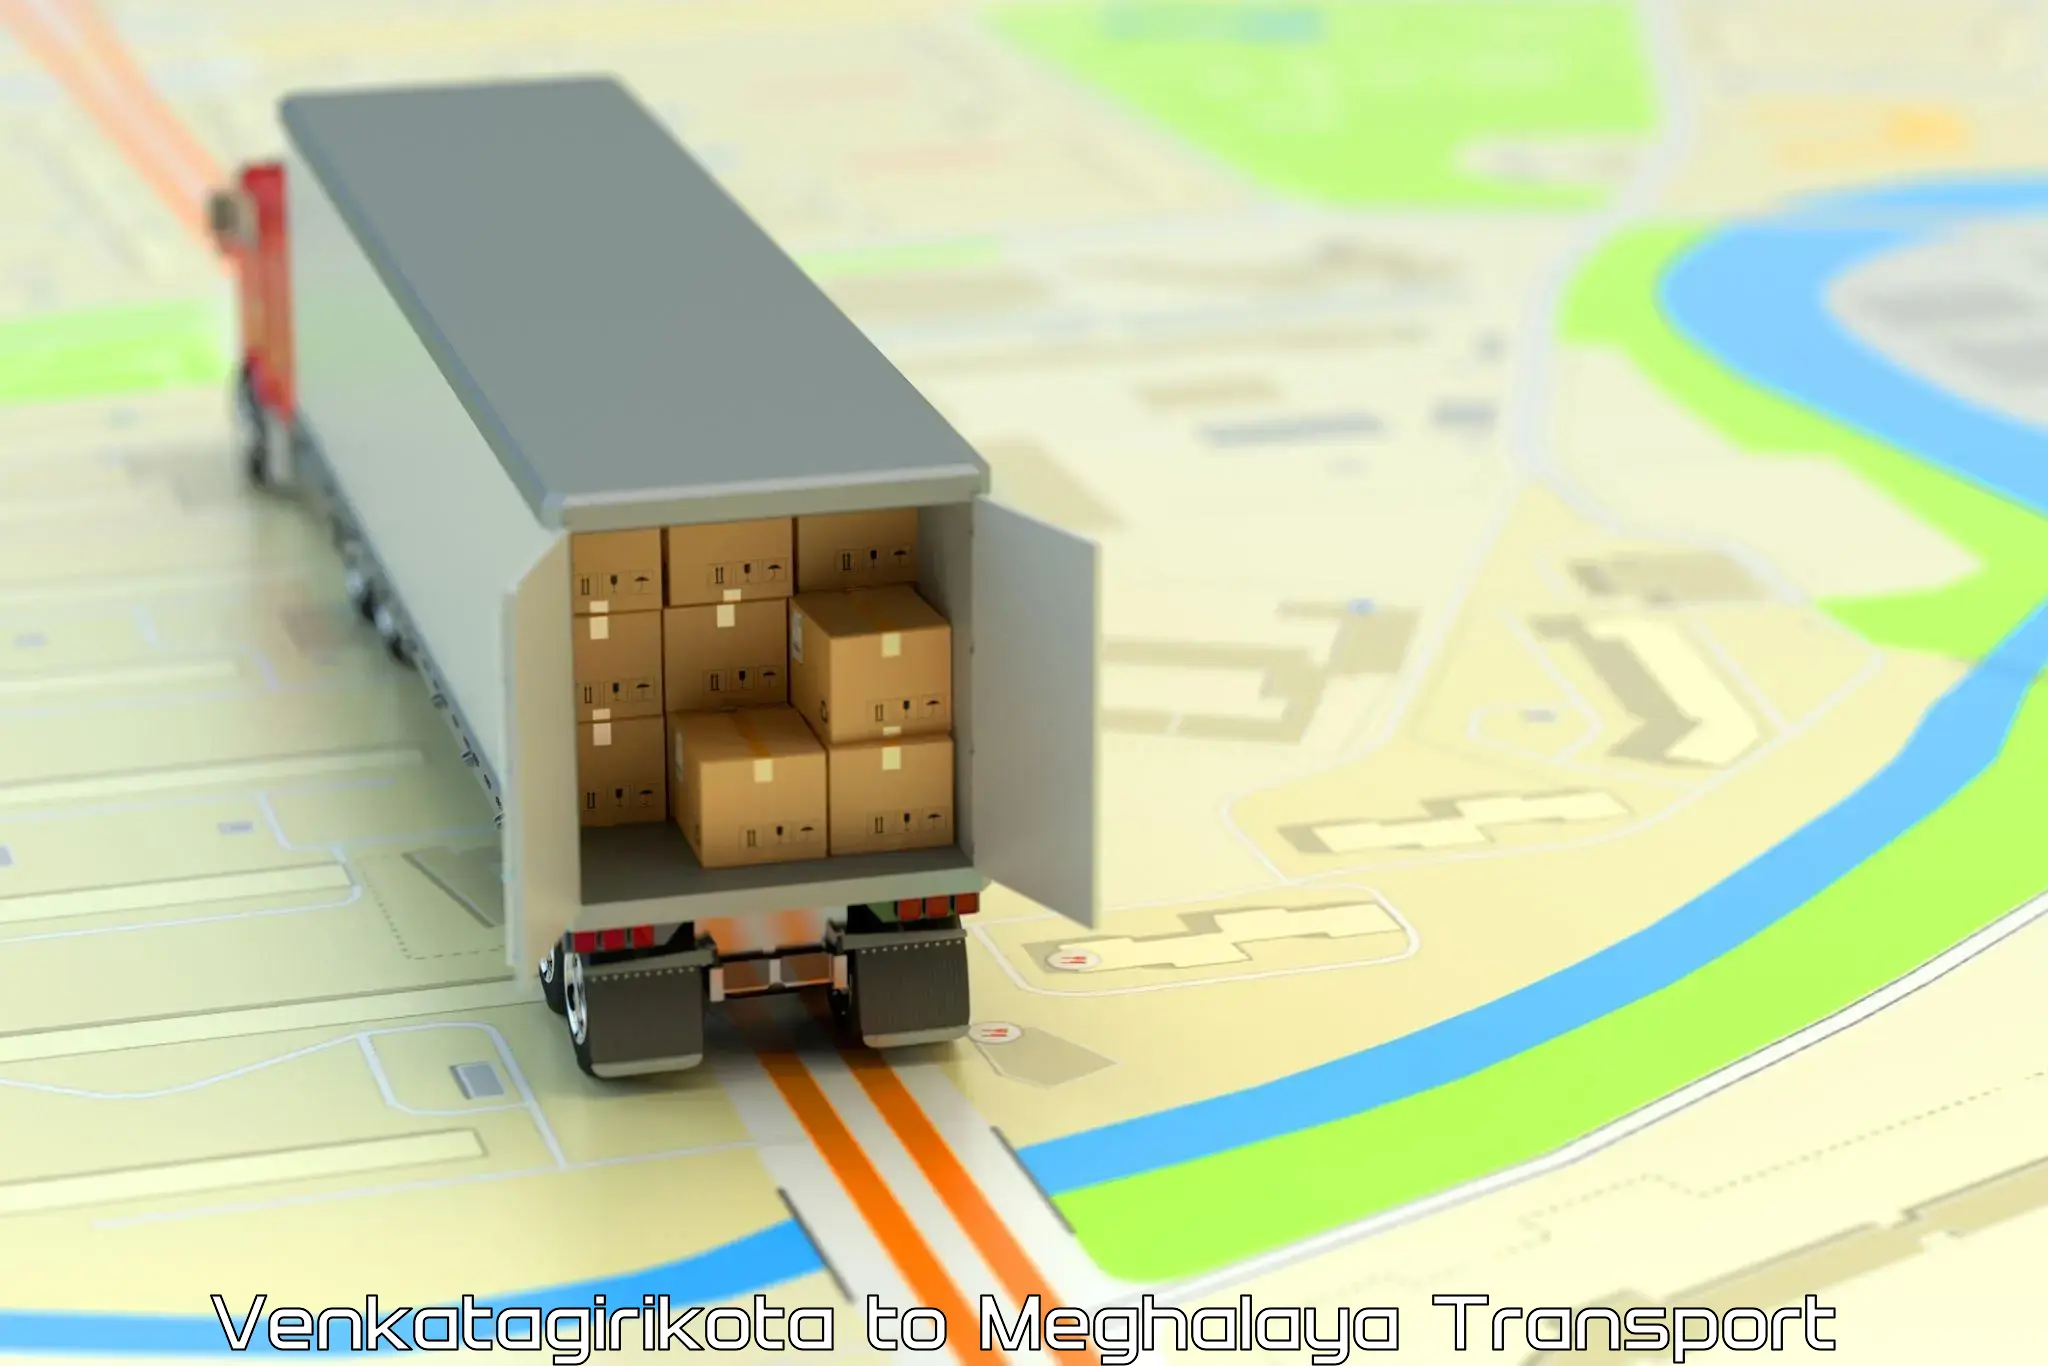 Cargo transport services Venkatagirikota to Tura